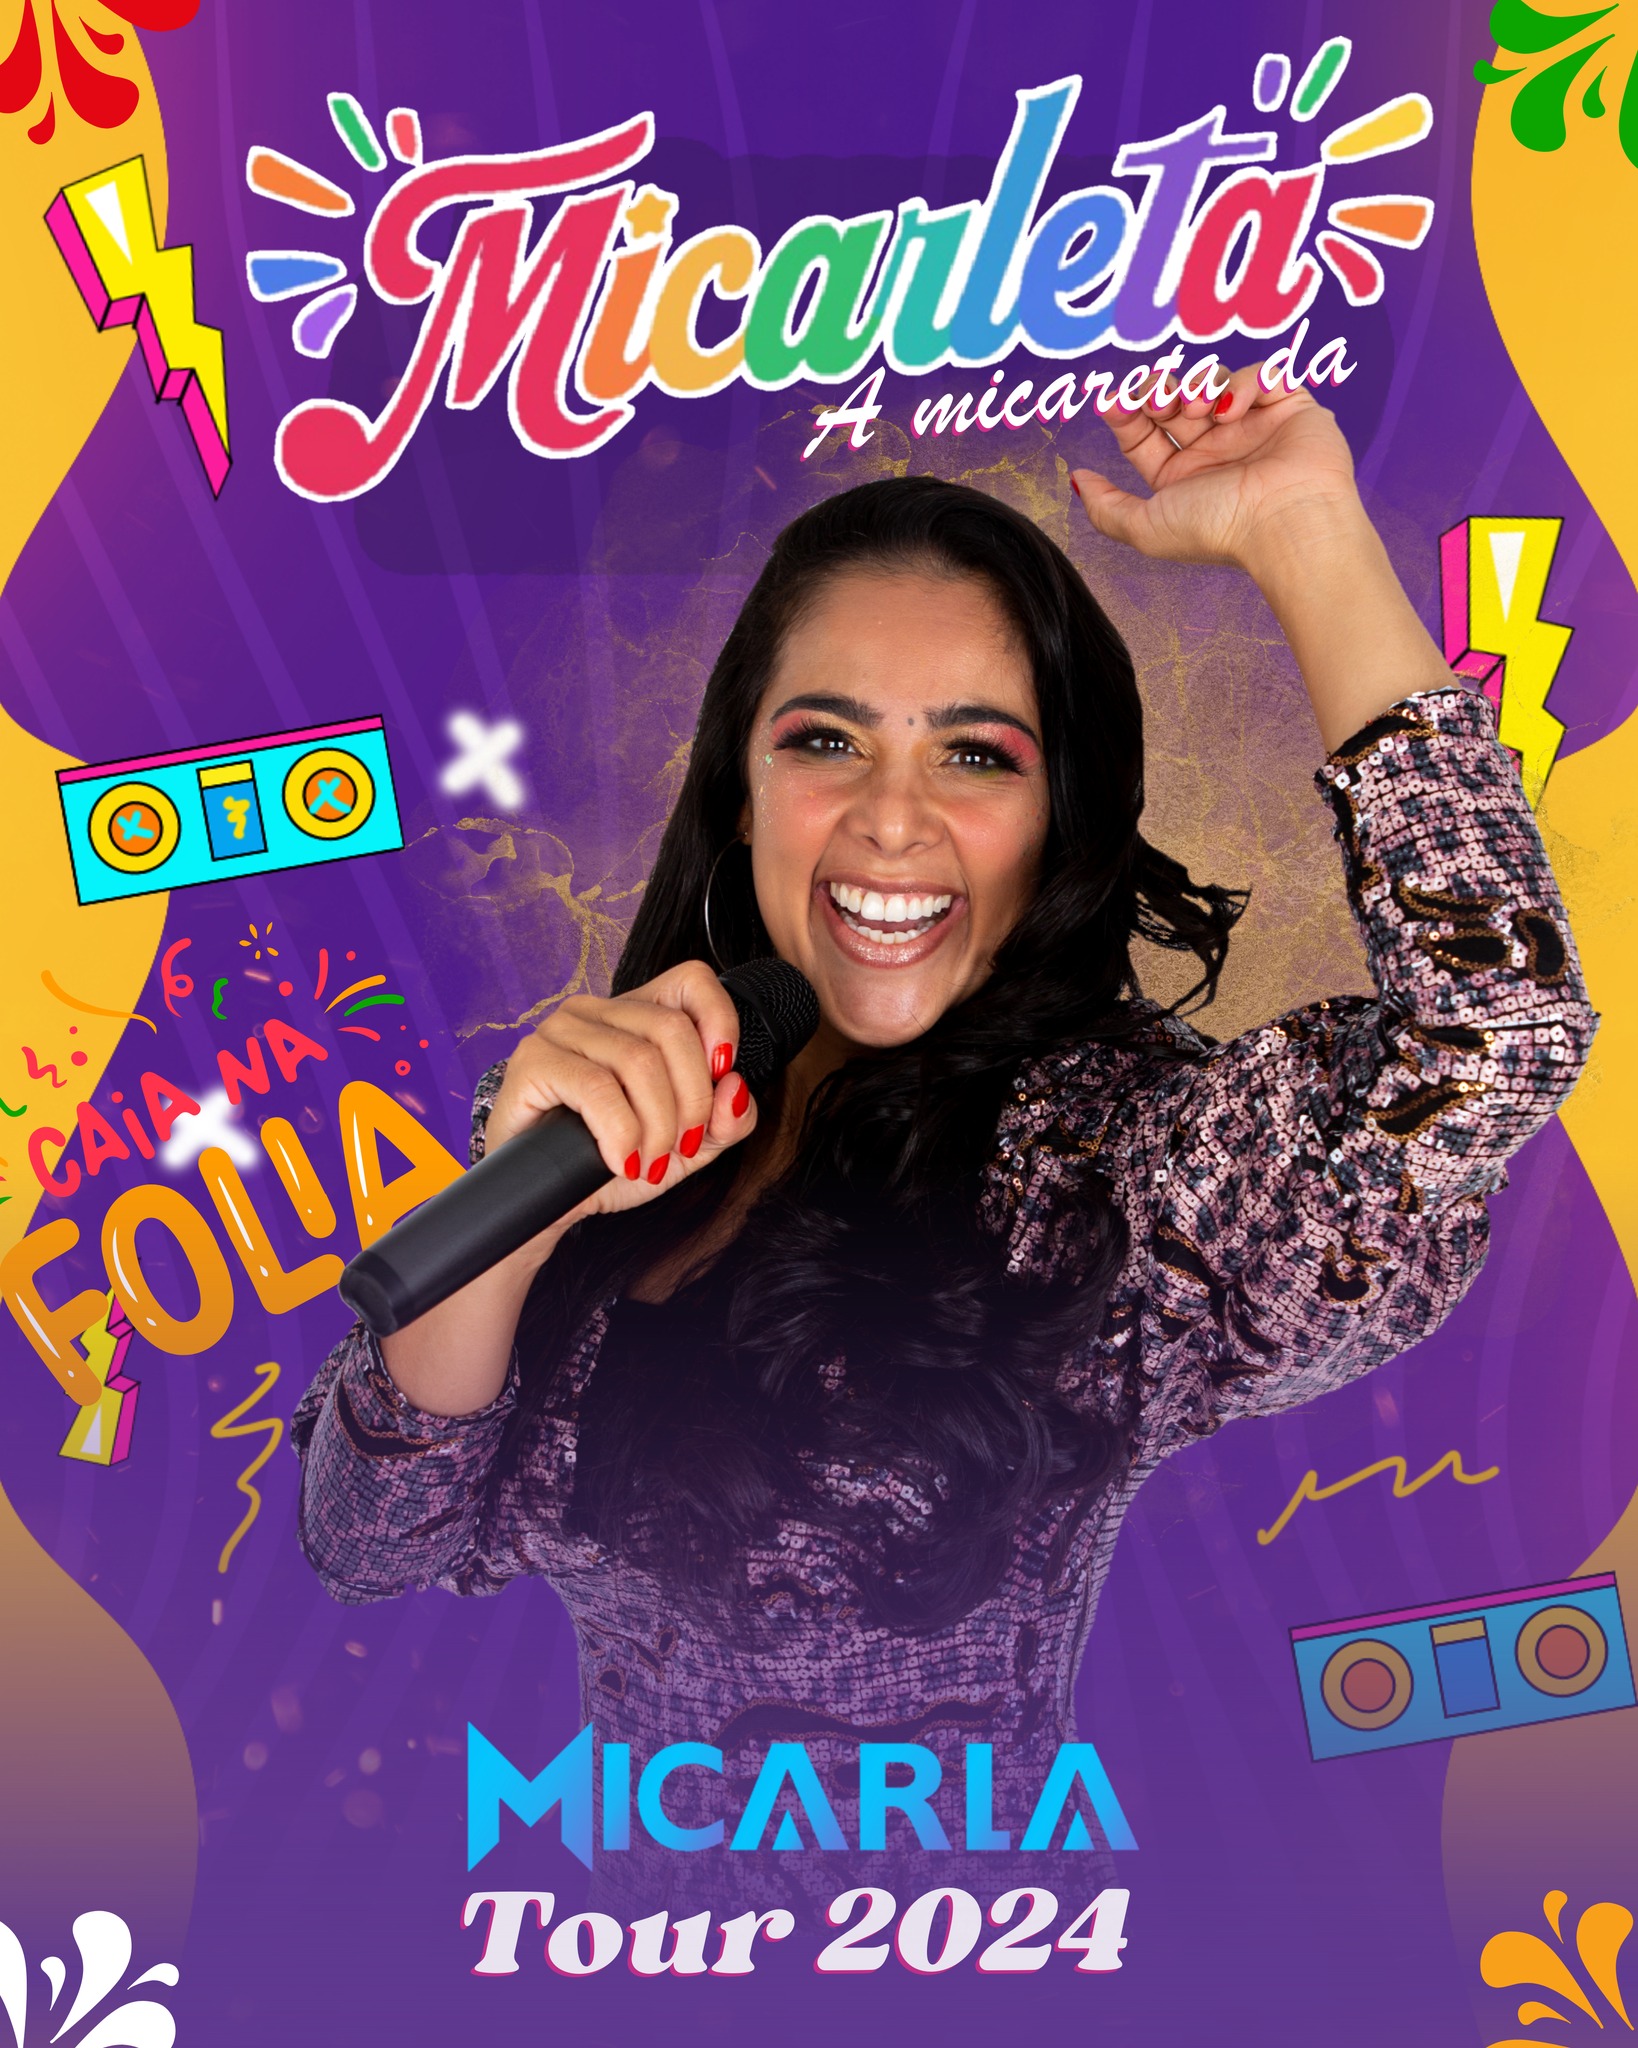 Cantora Micarla lança projeto temático para o carnaval e micaretas